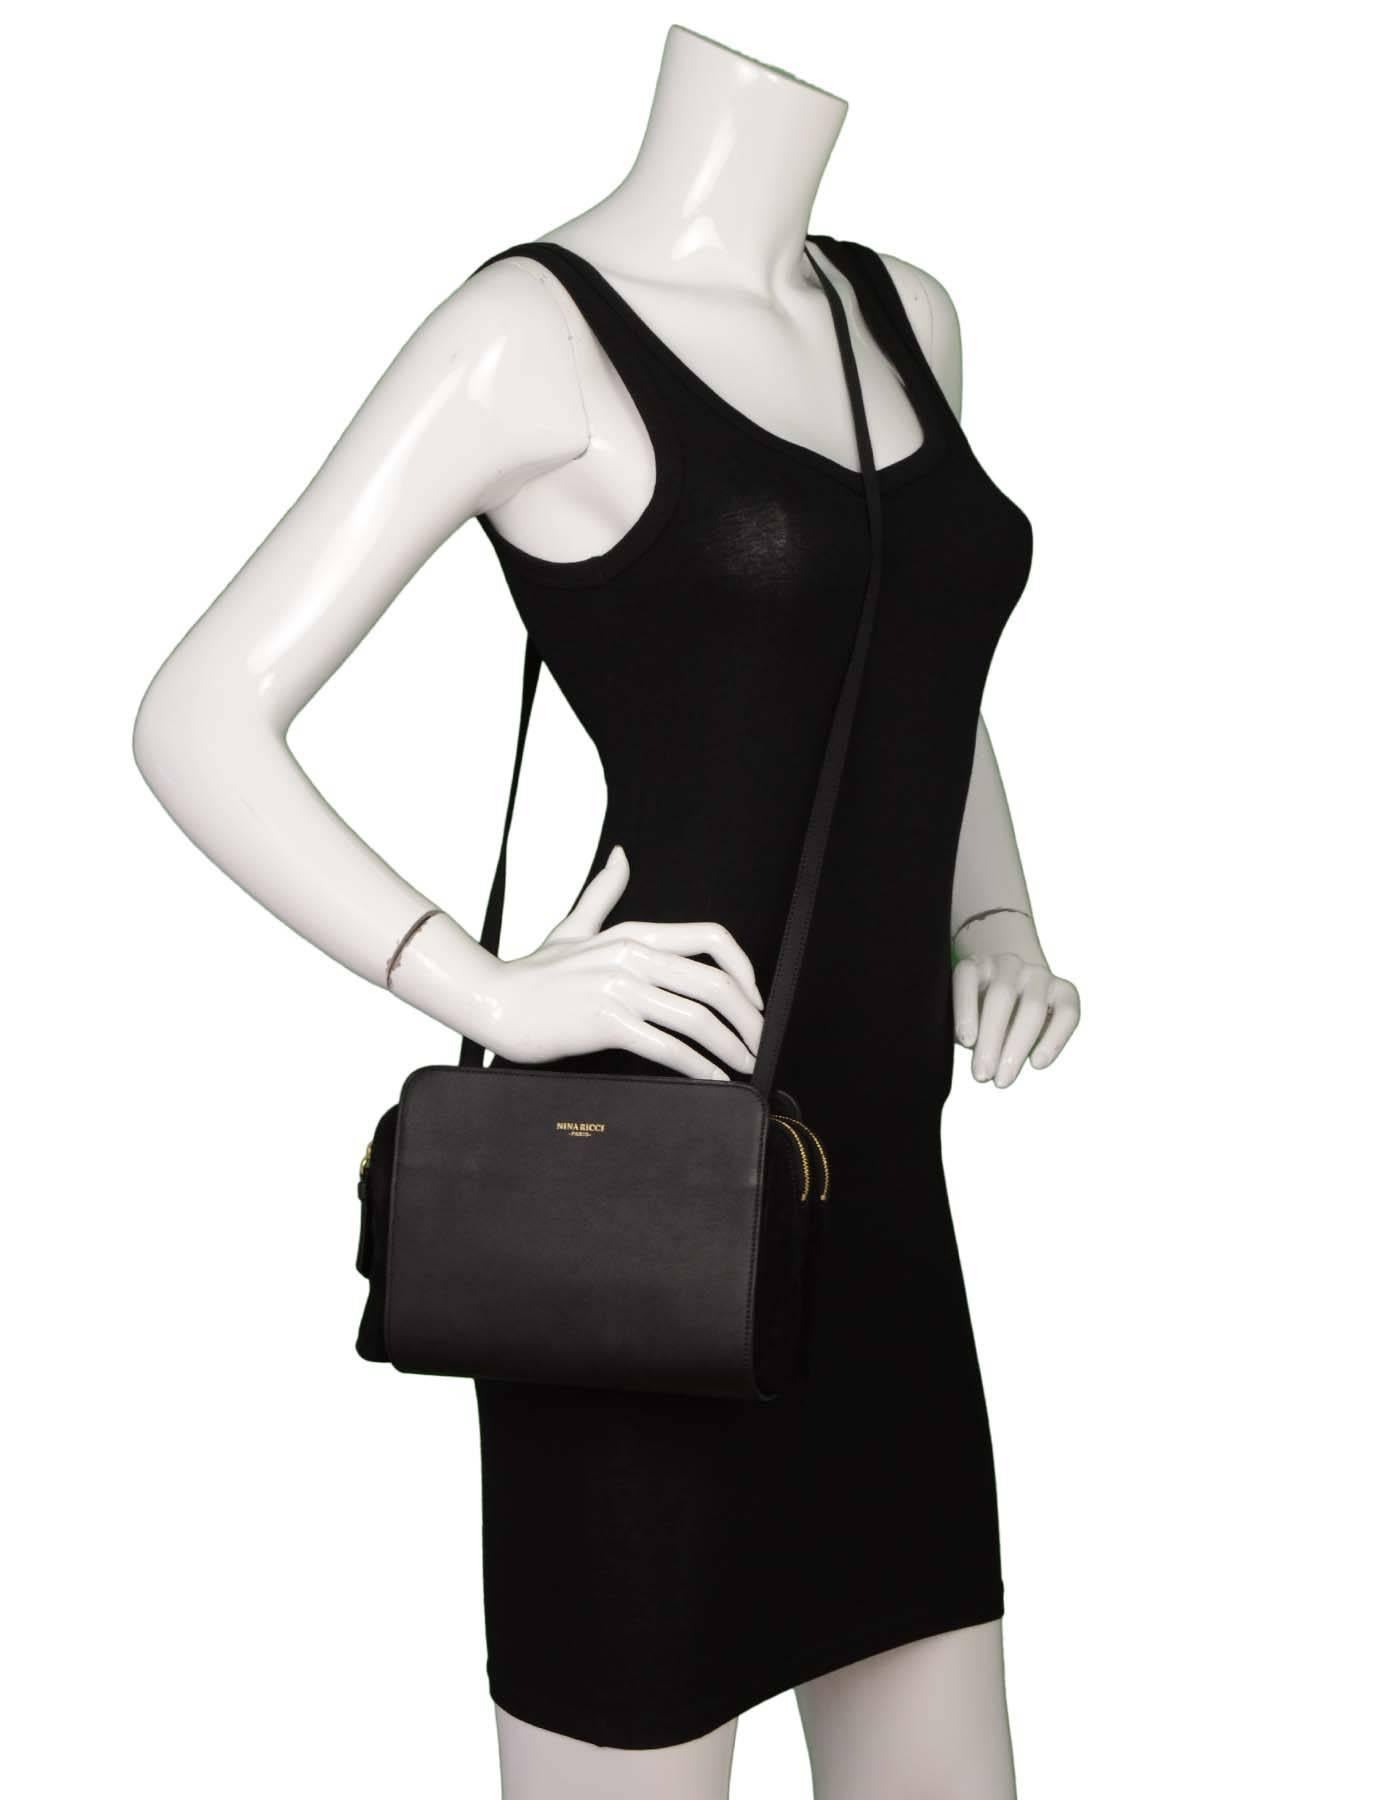 Nina Ricci Black Leather& Suede Crossbody Bag GHW 4